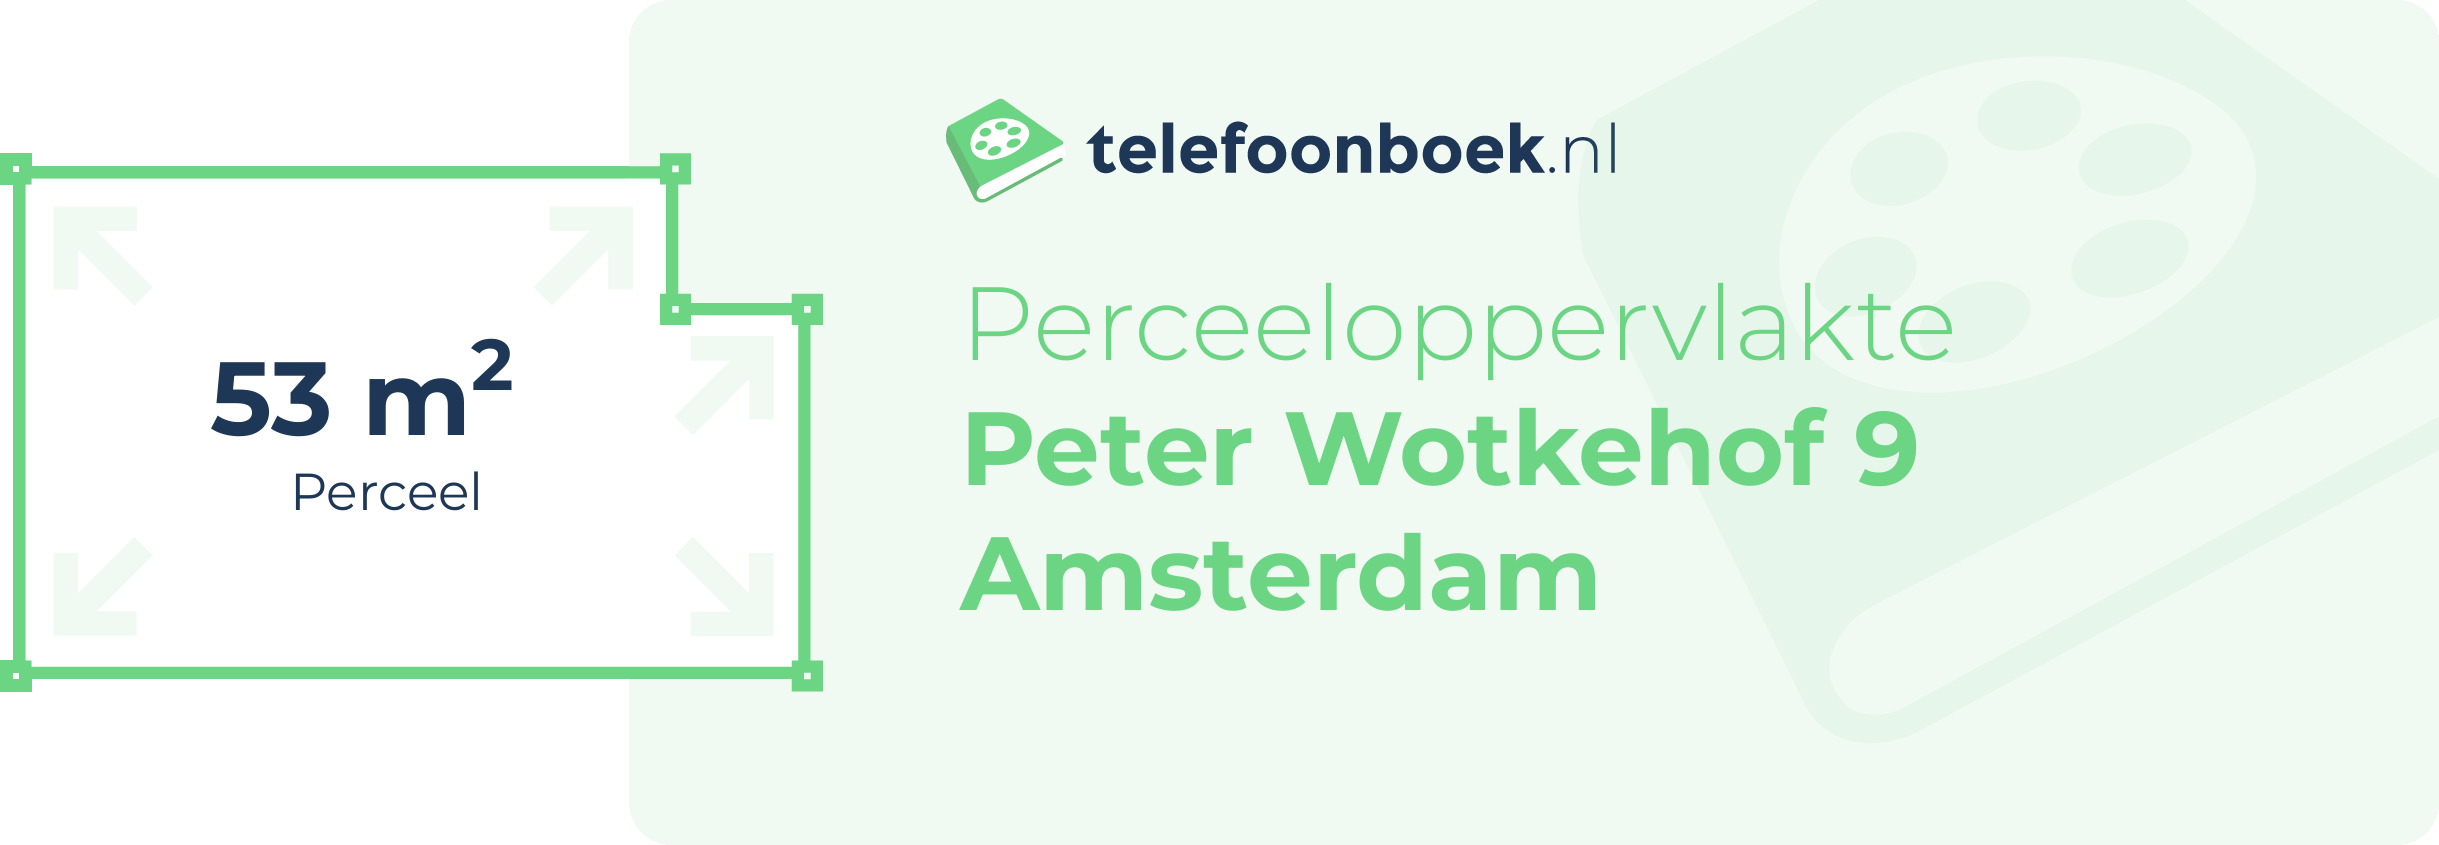 Perceeloppervlakte Peter Wotkehof 9 Amsterdam